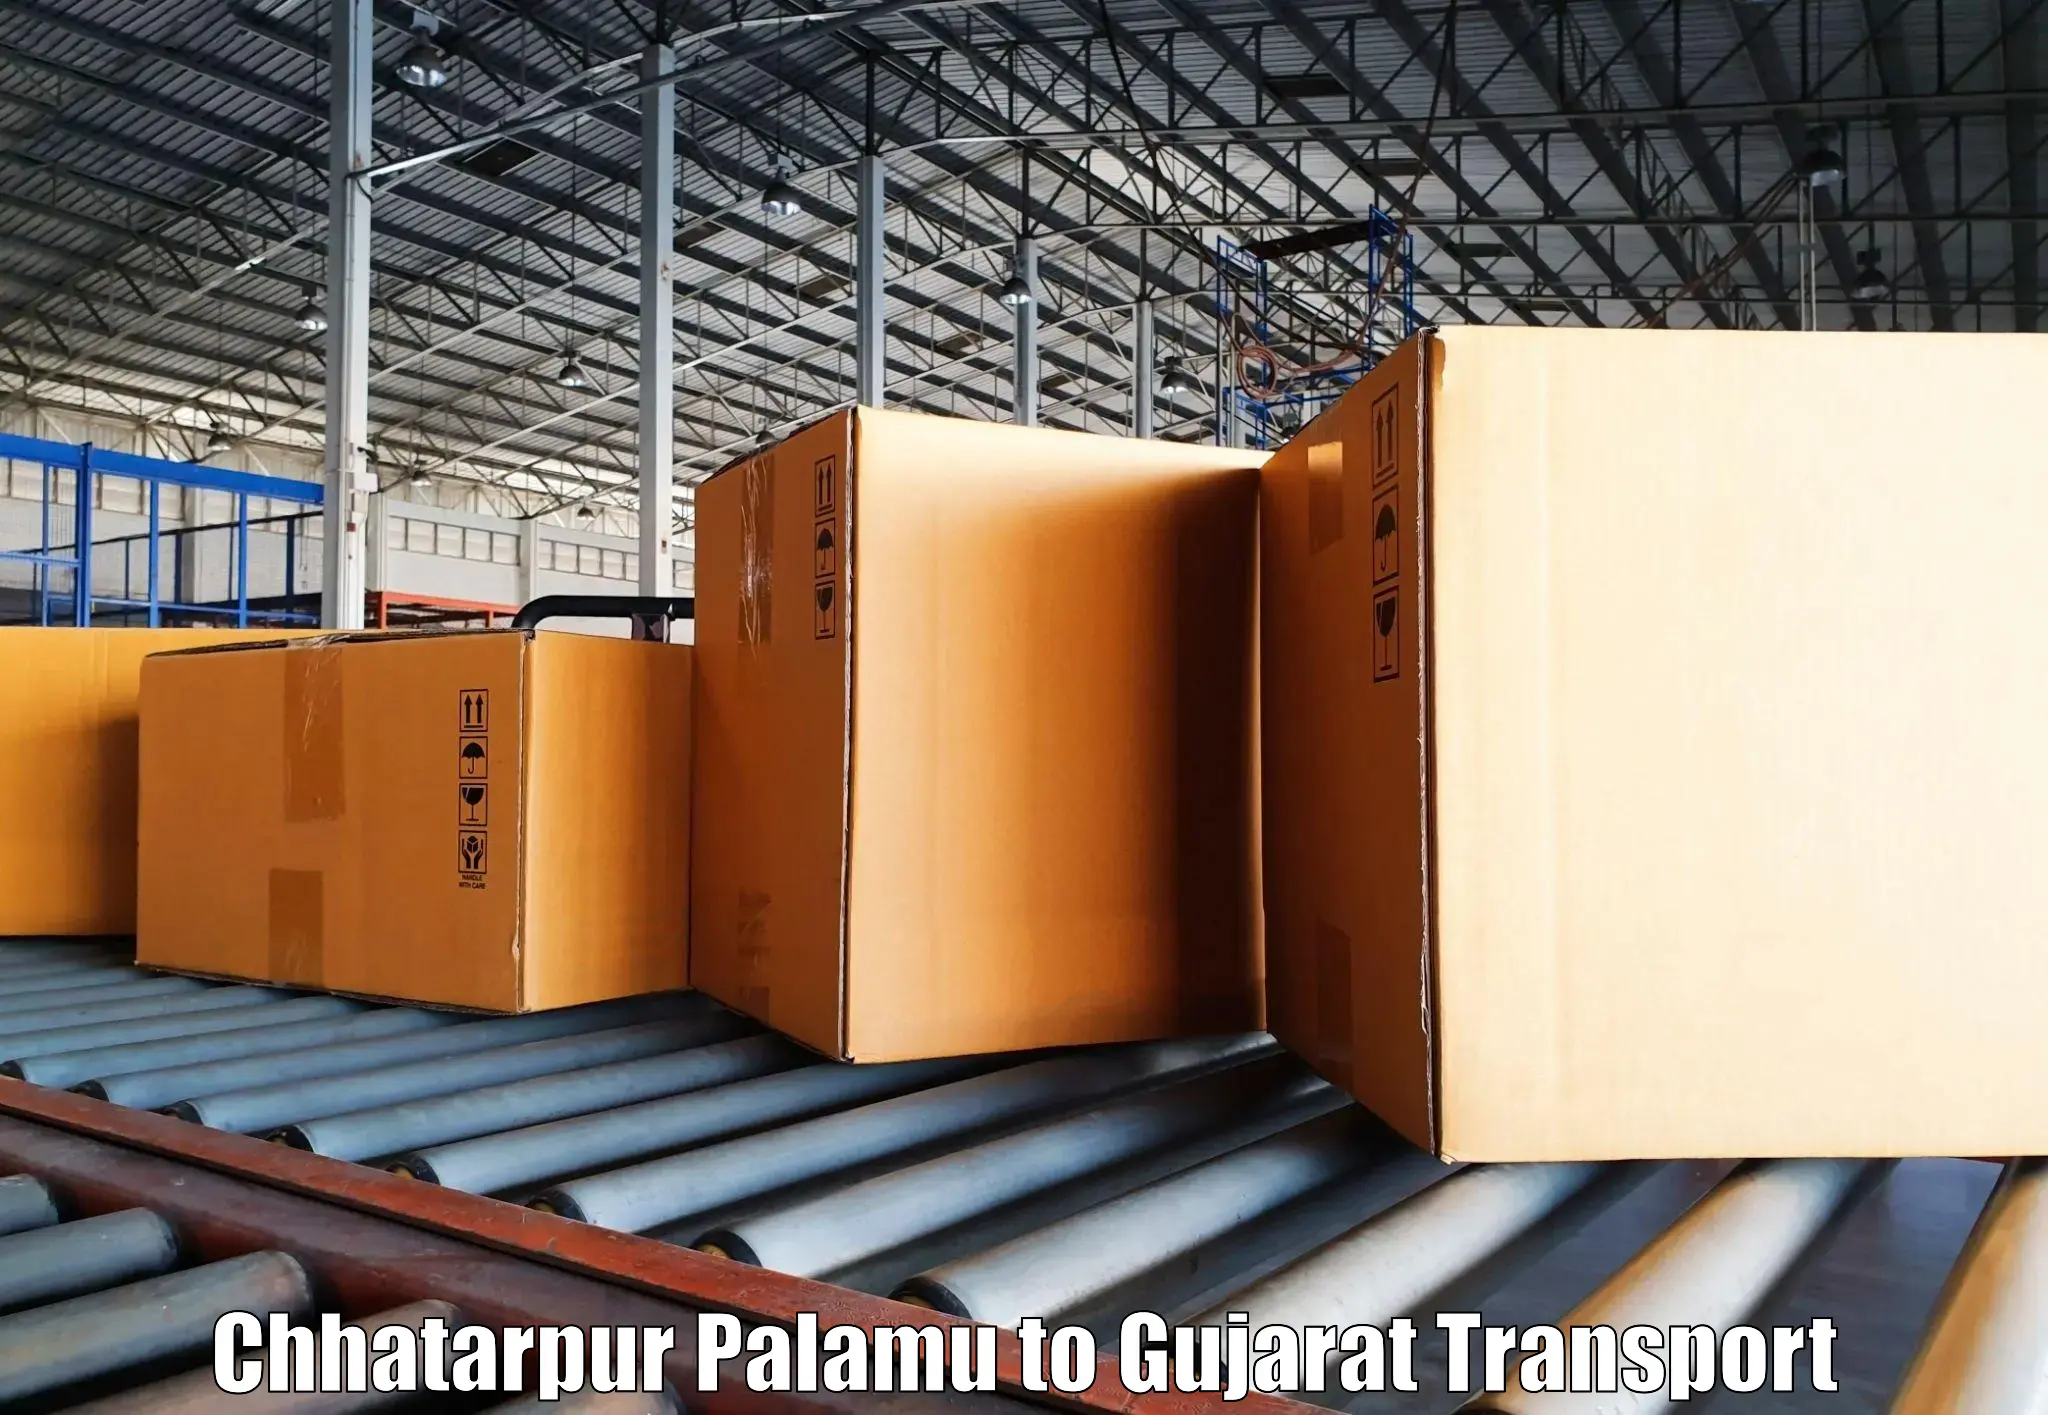 Daily transport service Chhatarpur Palamu to Banaskantha